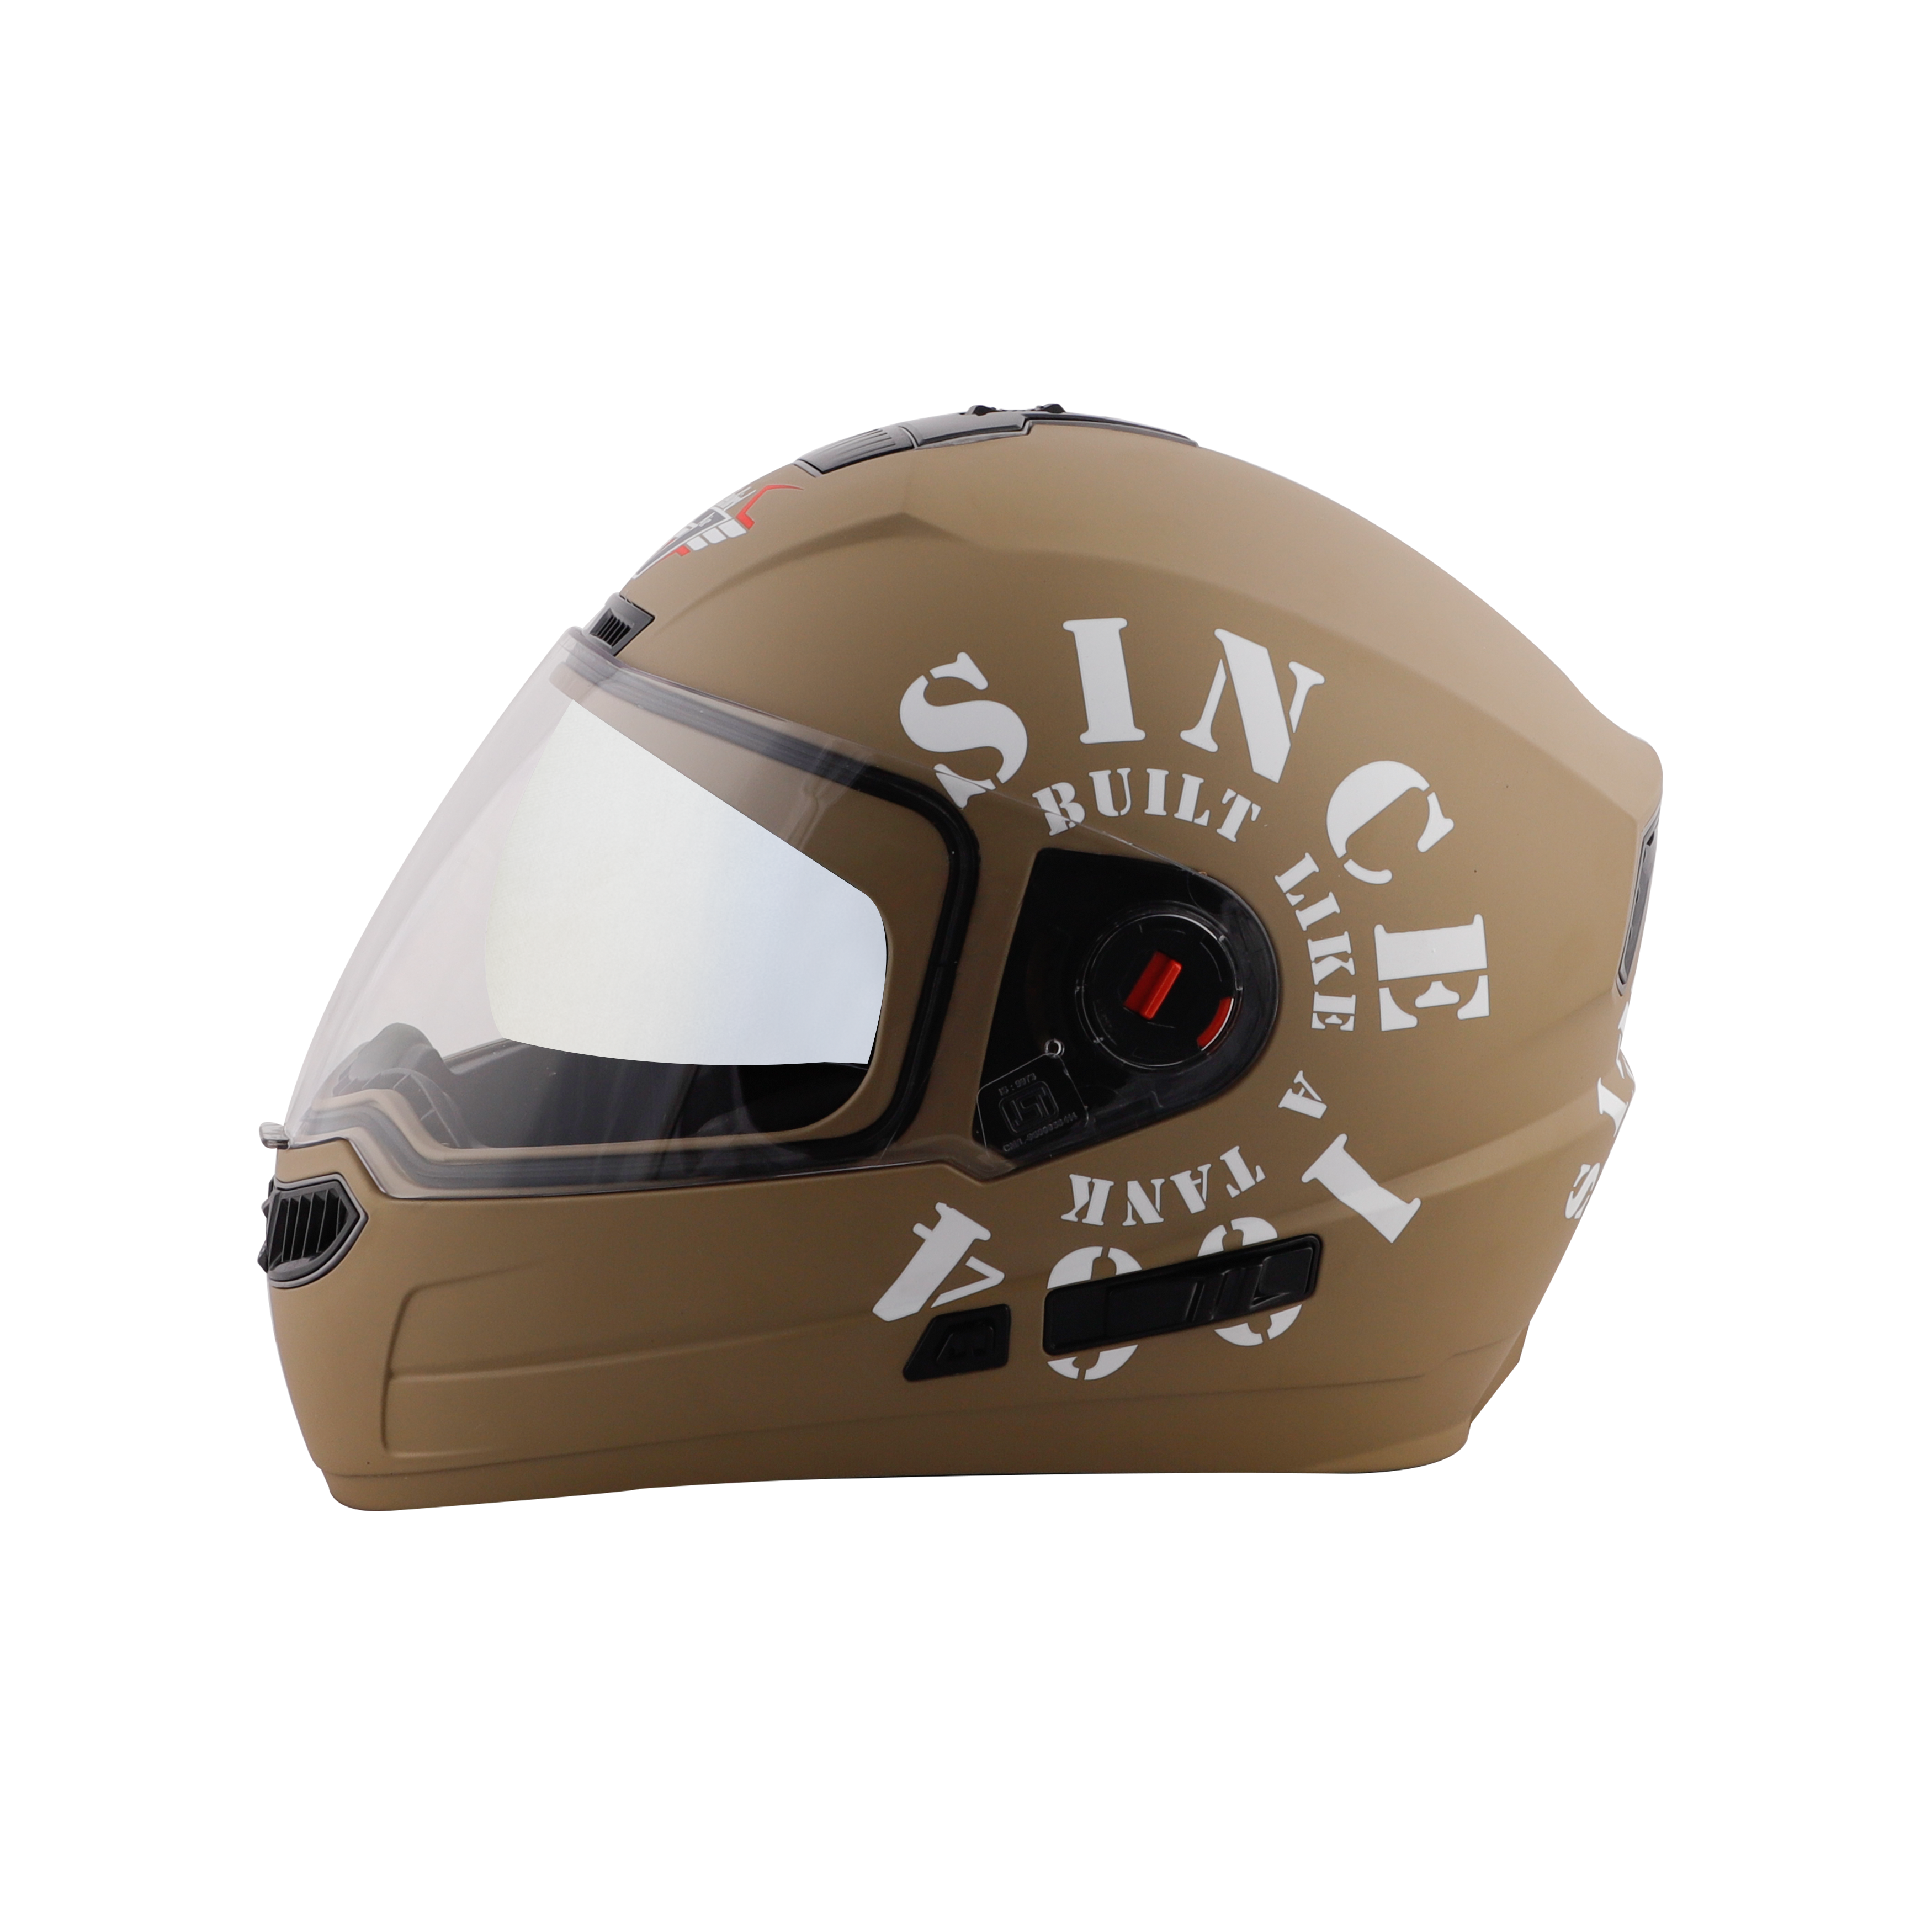 Steelbird SBA-1 Tank Double Visor Full Face Graphics Helmet, Inner Silver Sun Shield And Outer Clear Visor (Matt Desert Storm White)